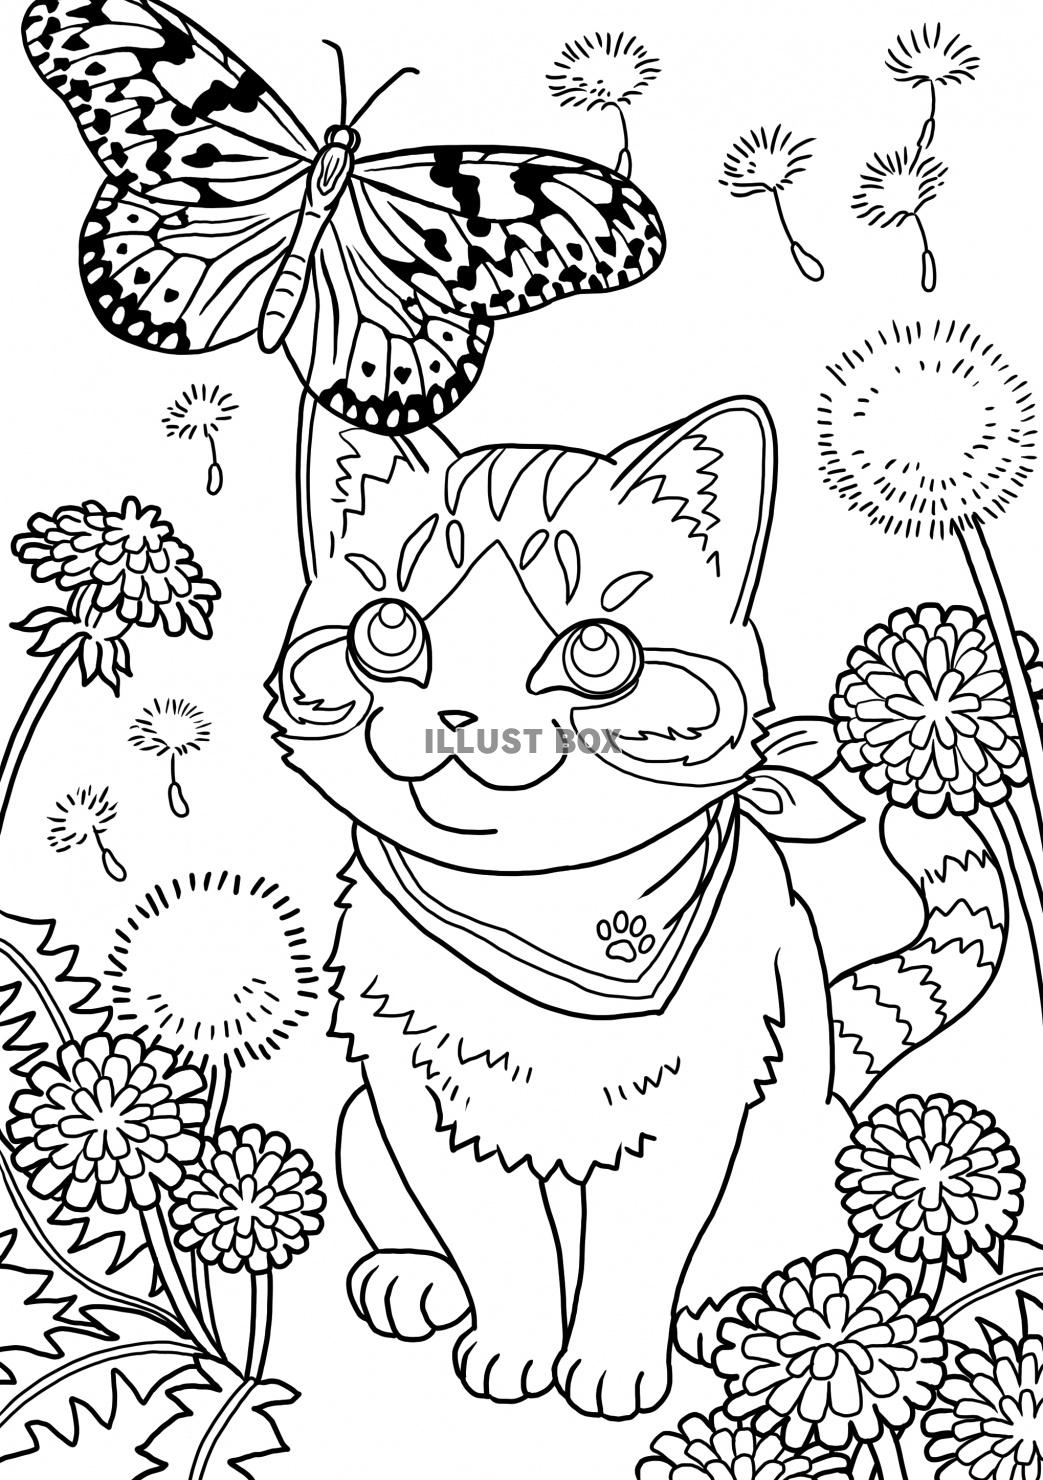 無料イラスト 猫と蝶とたんぽぽの塗り絵